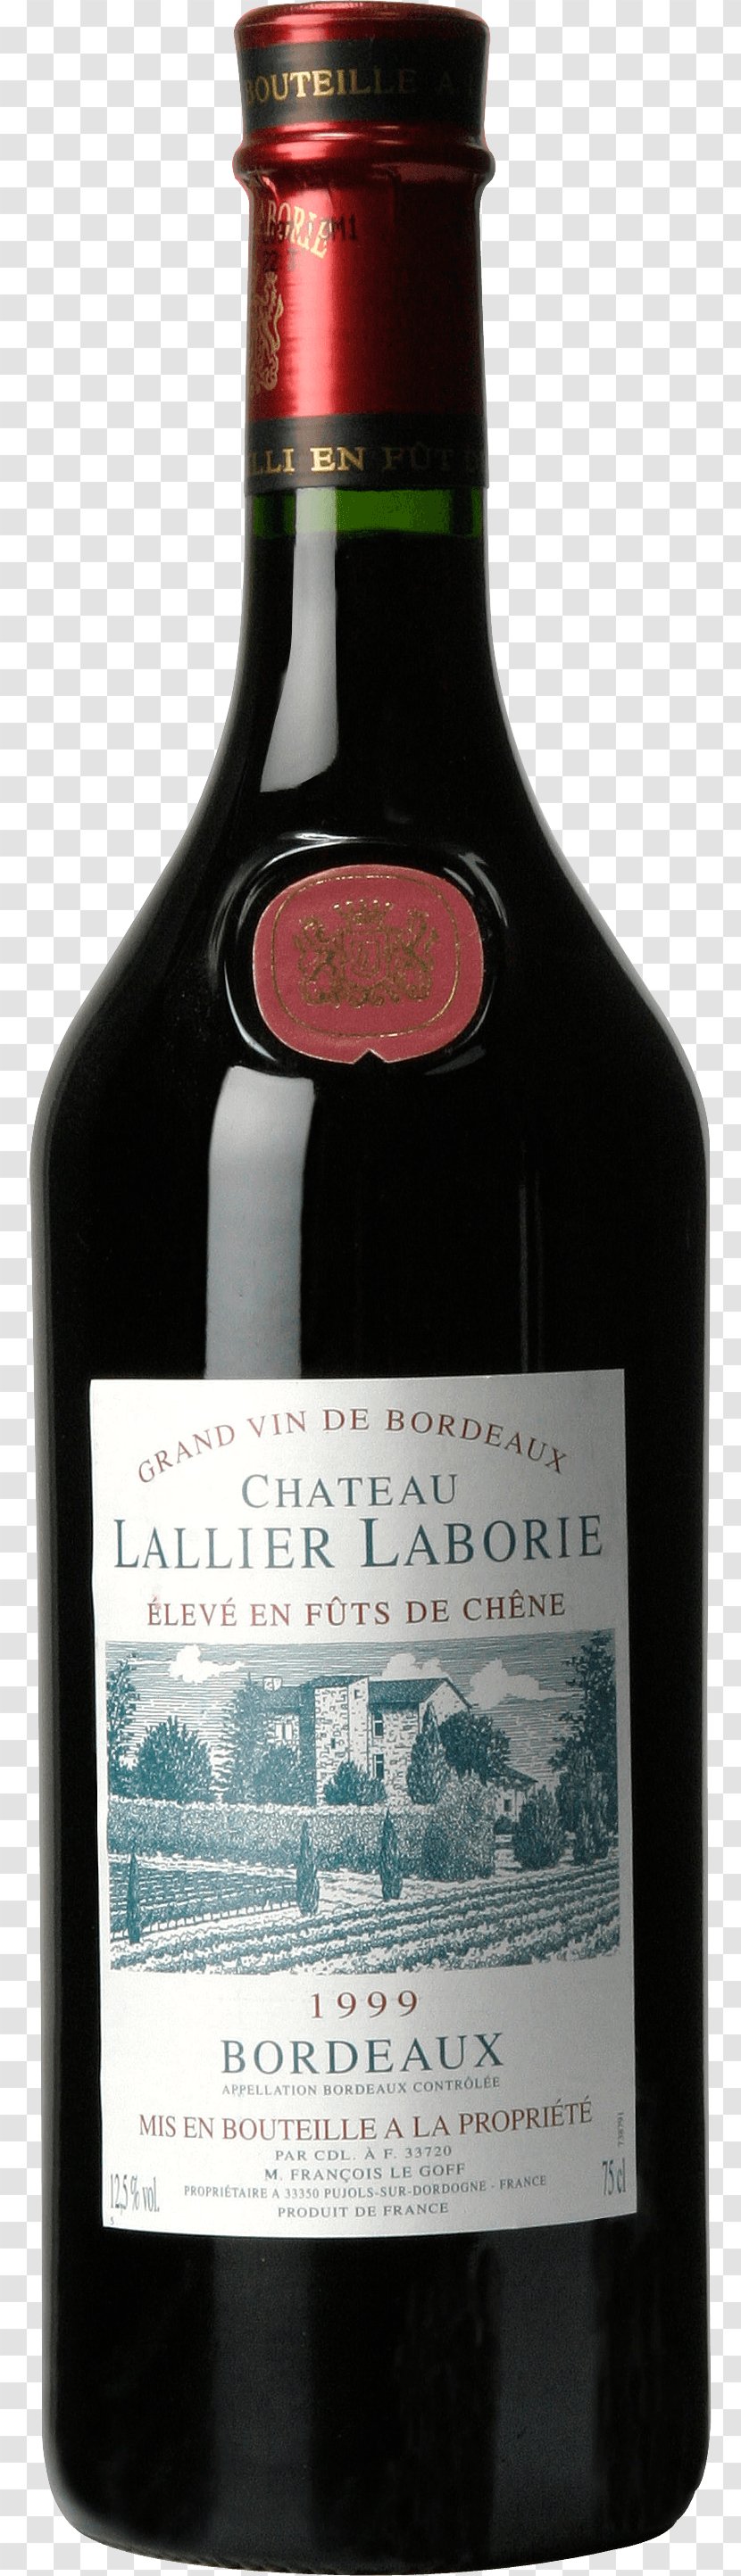 Wine Bottle Clip Art - Alcoholic Beverage - Image Transparent PNG